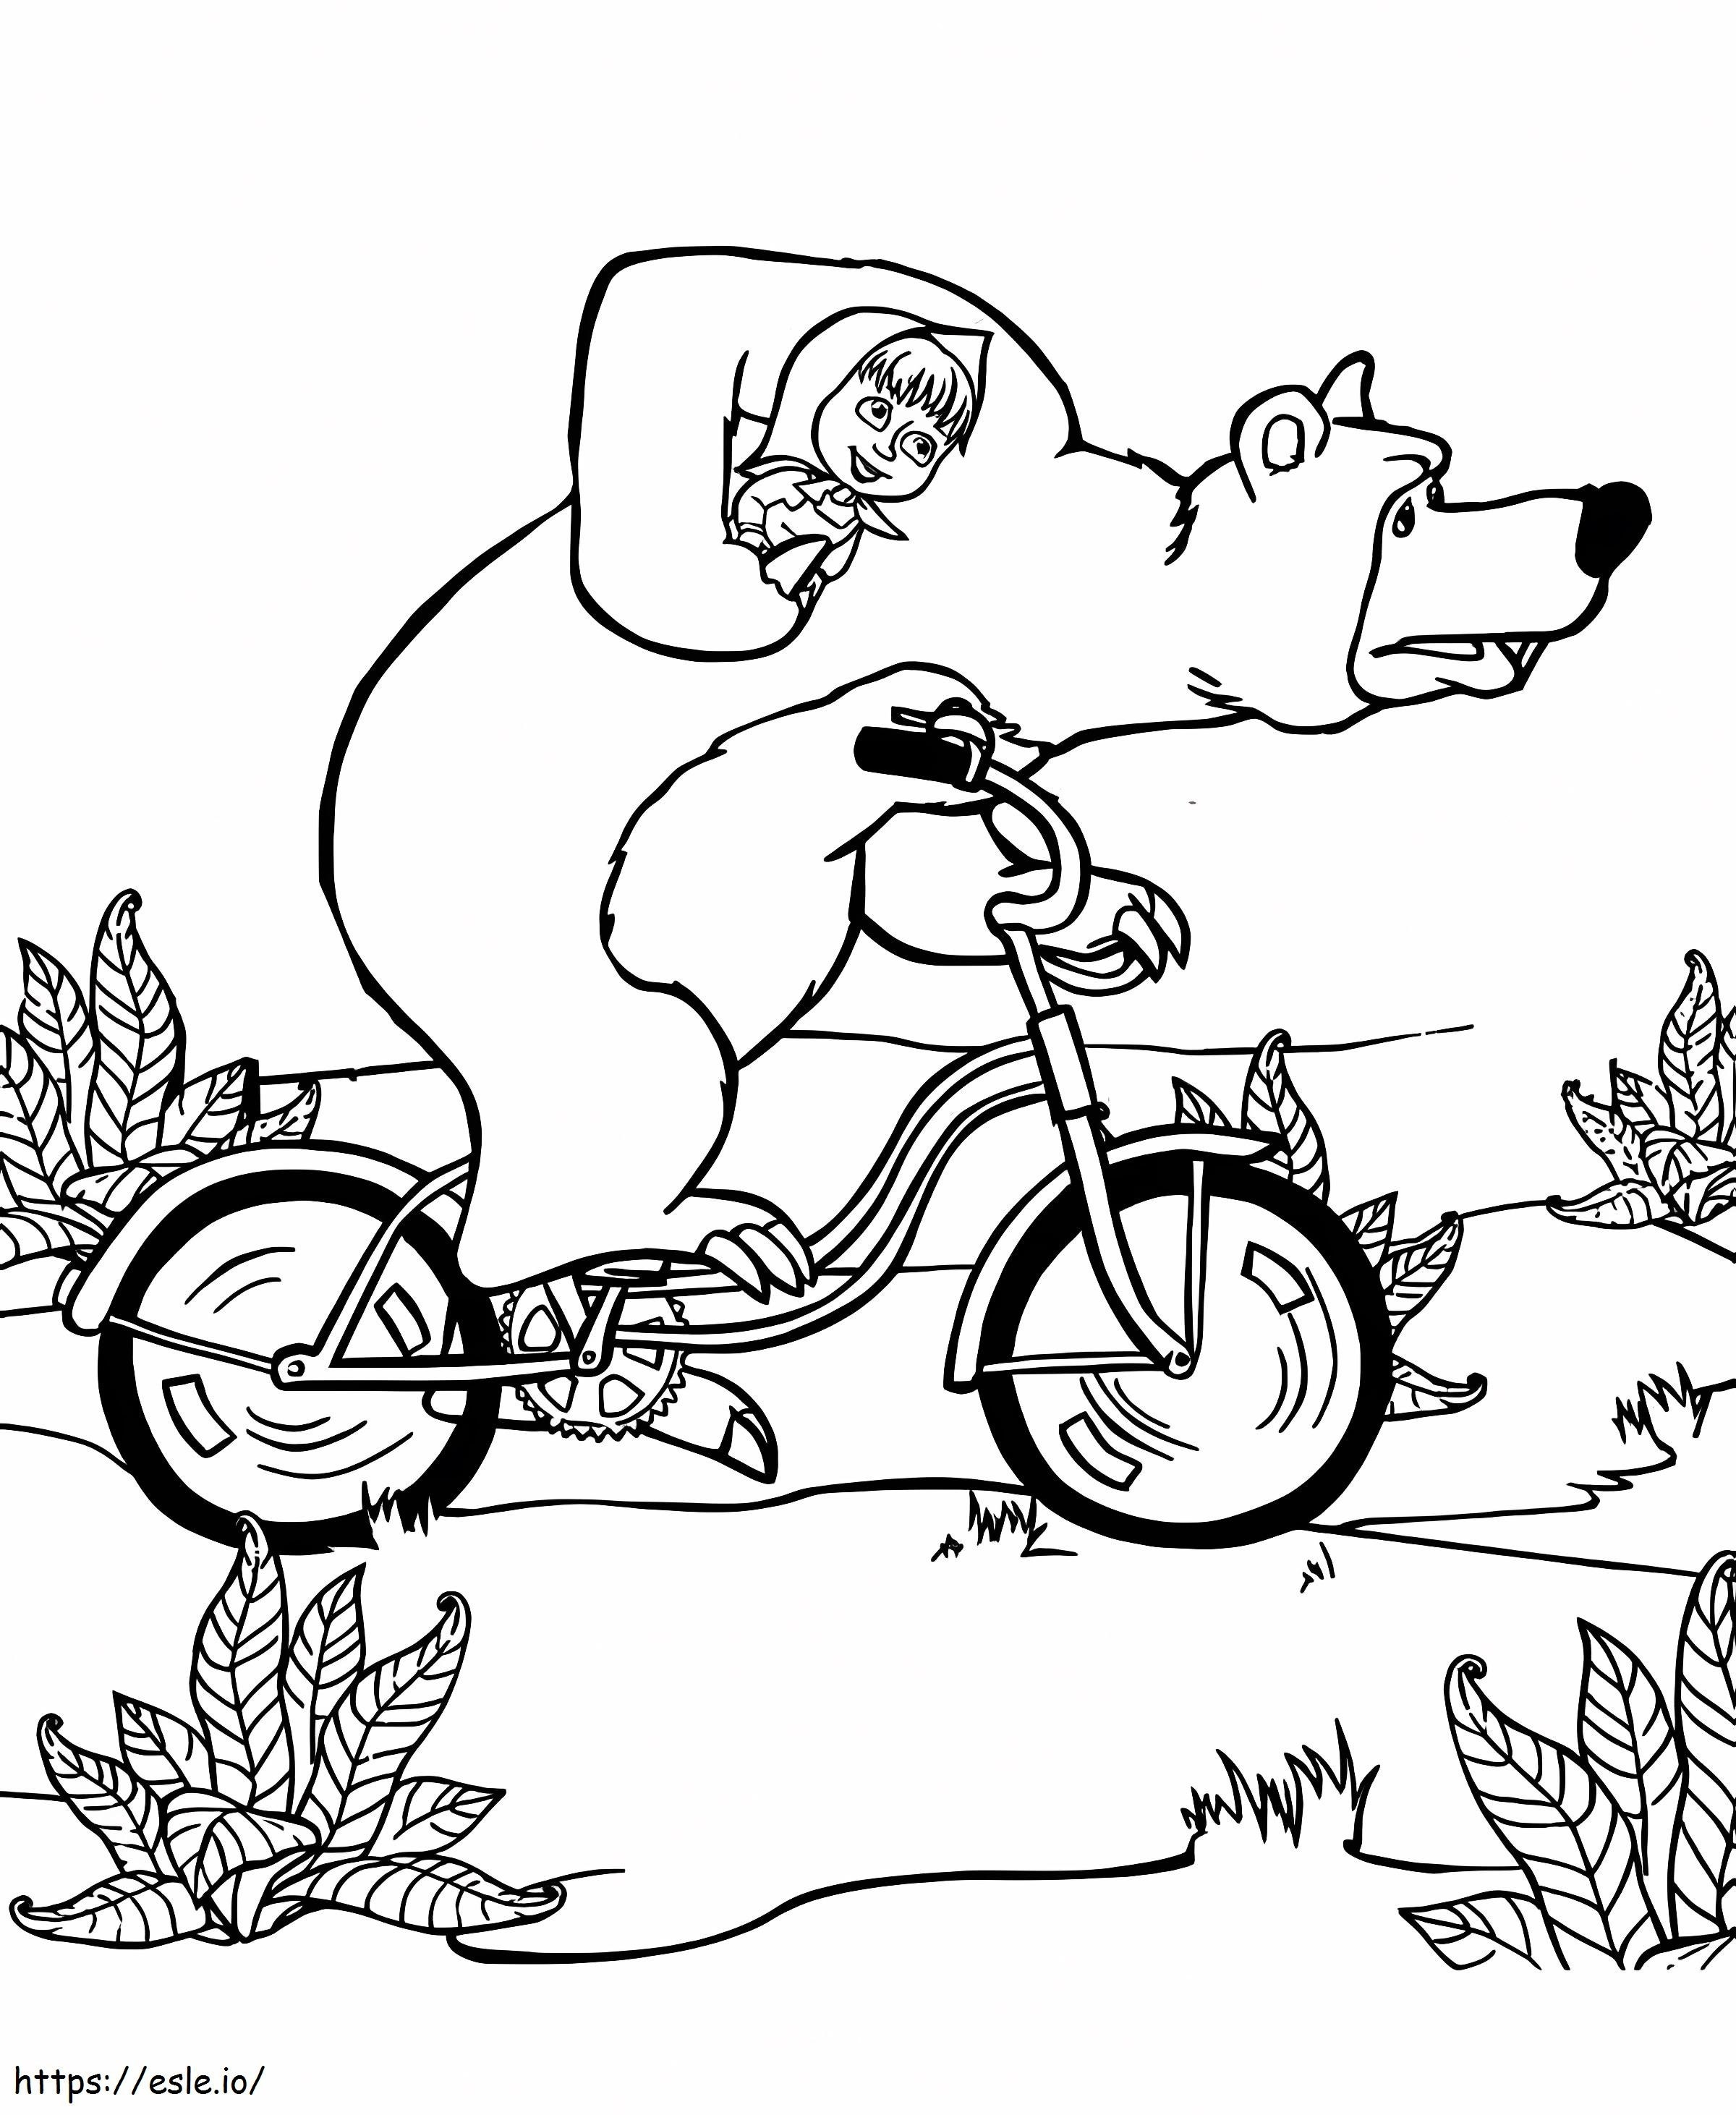 Disegni da colorare di Masha in bicicletta con orso da colorare